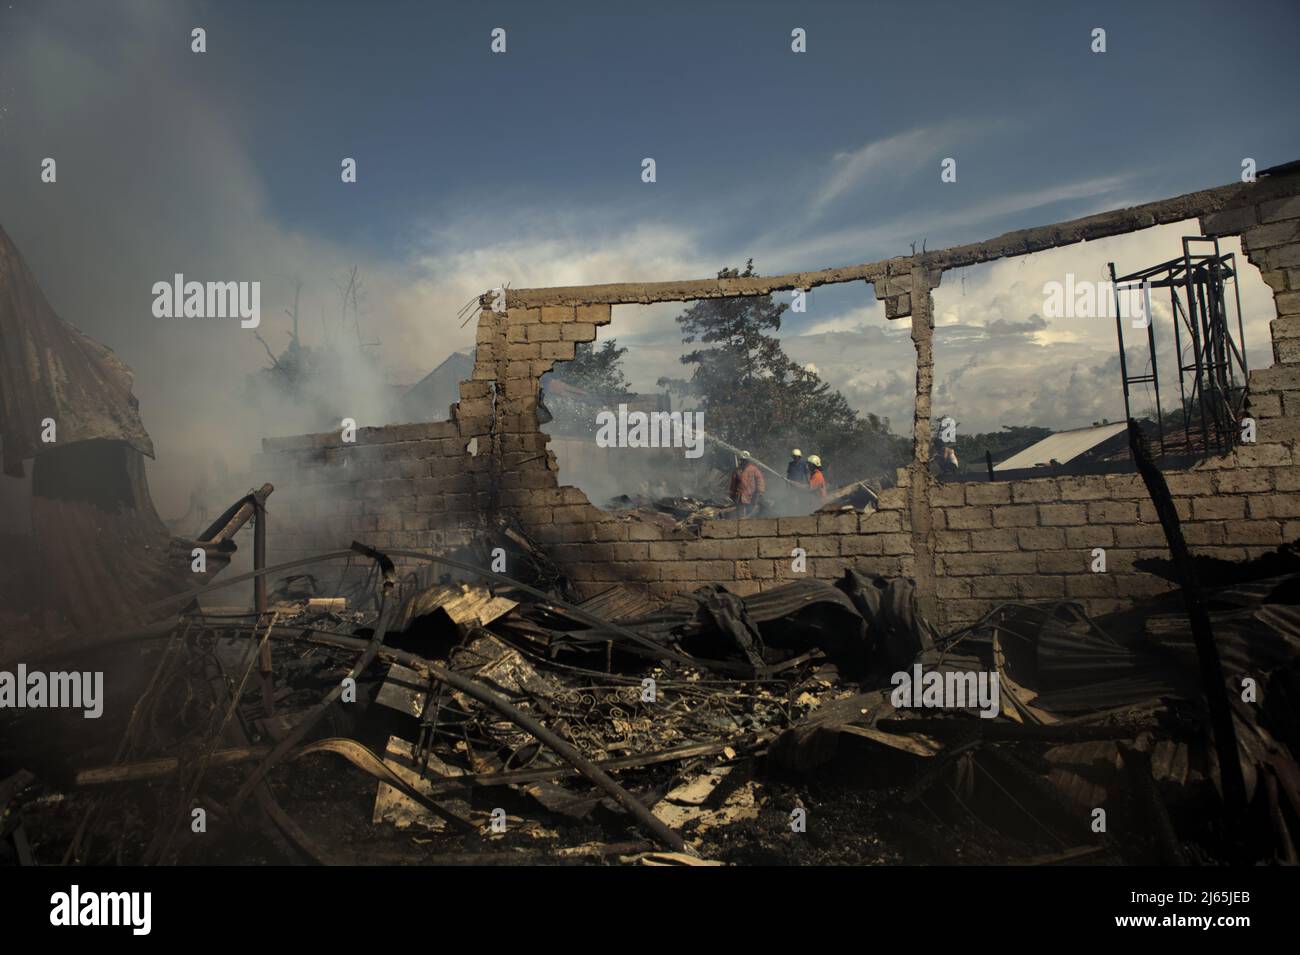 Mitglieder der Löschgruppe von Jakarta, die die Abkühlphase nach einem Feuerunfall durchführten, verbrannten Lagergebäude einer Heimindustrie in Kebayoran Lama, Süd-Jakarta, Jakarta, Indonesien. Stockfoto